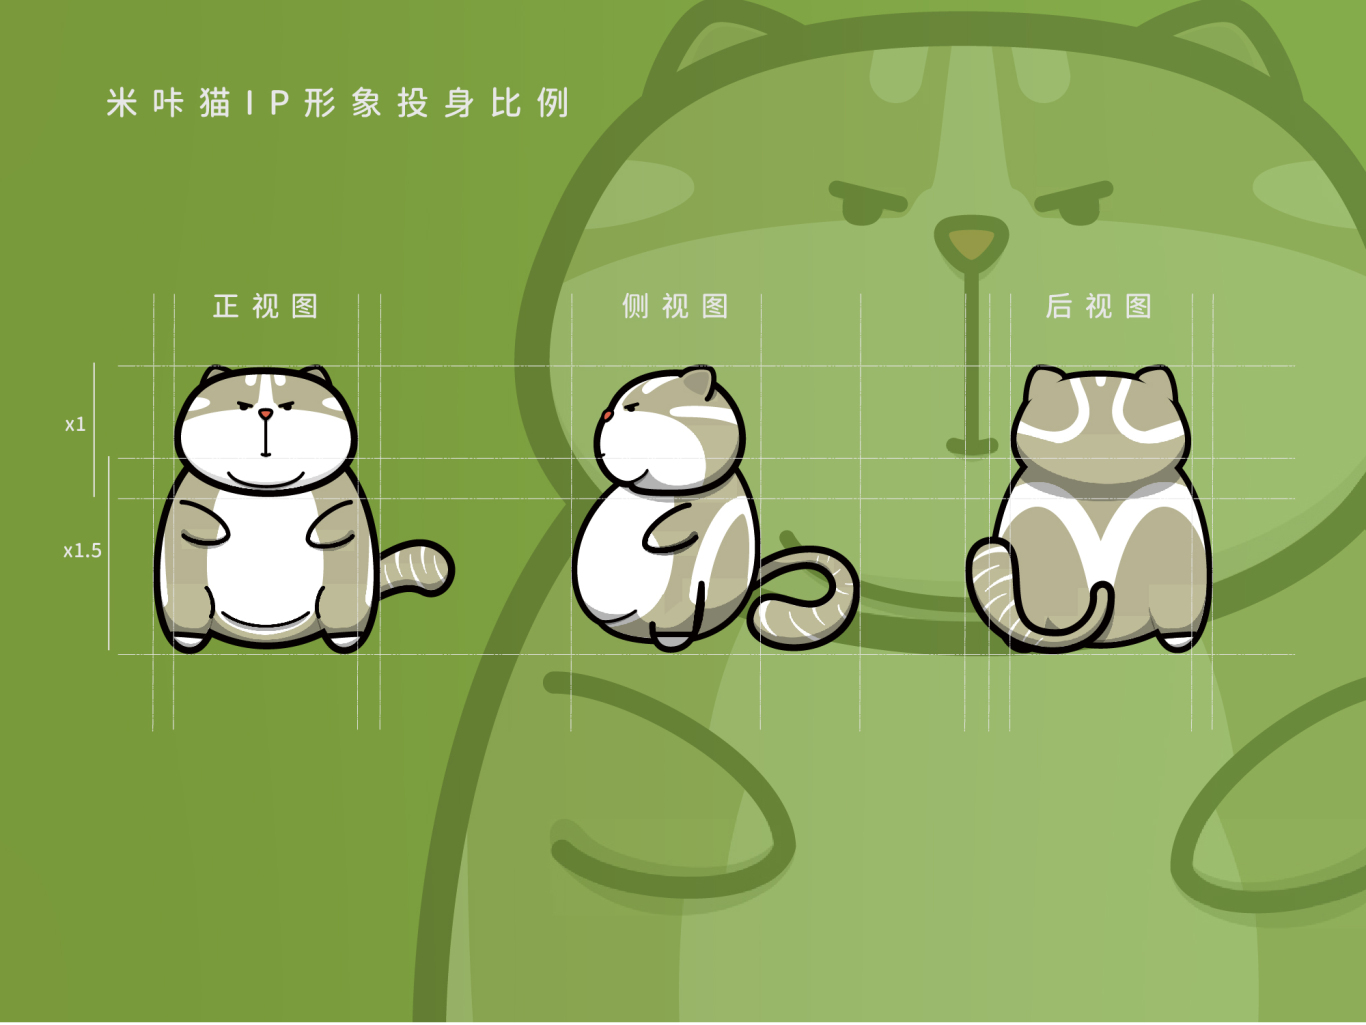 米咔猫儿童生活形象馆图1